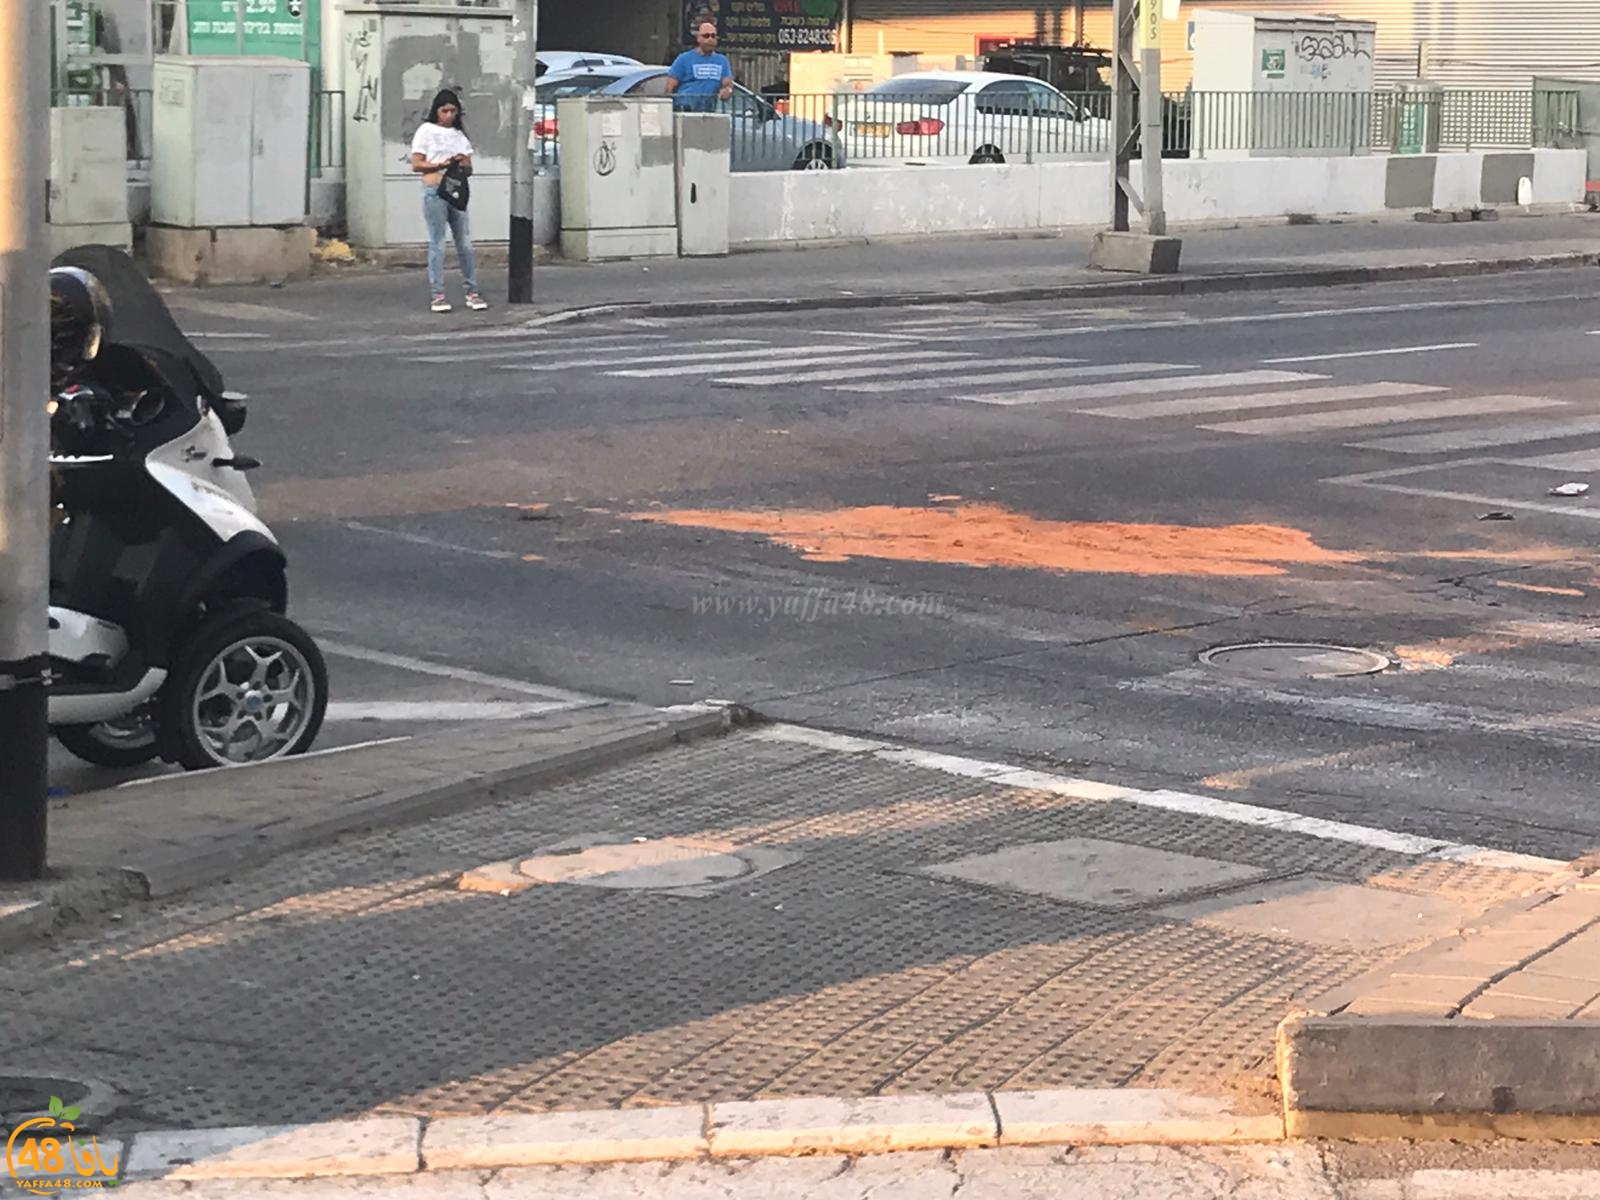   يافا: إصابة خطرة لسيّدة بحادث دهس بالمدينة 